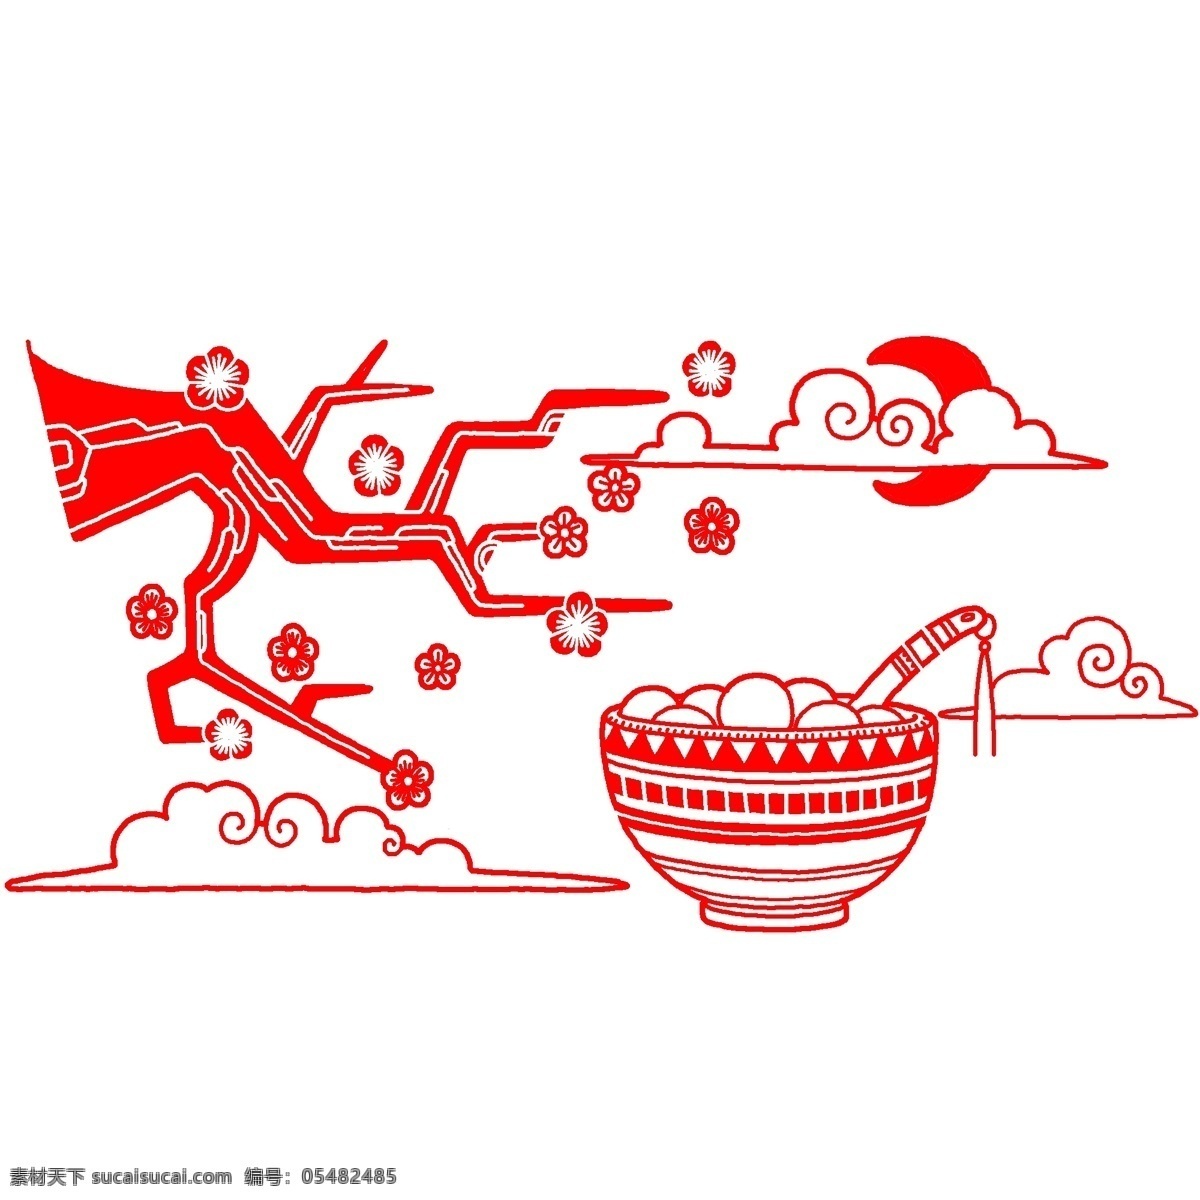 红色 剪纸 汤圆 插画 红色的剪纸 中国风插画 手绘红色插画 卡通红色插画 卡通汤圆插画 红色的花朵